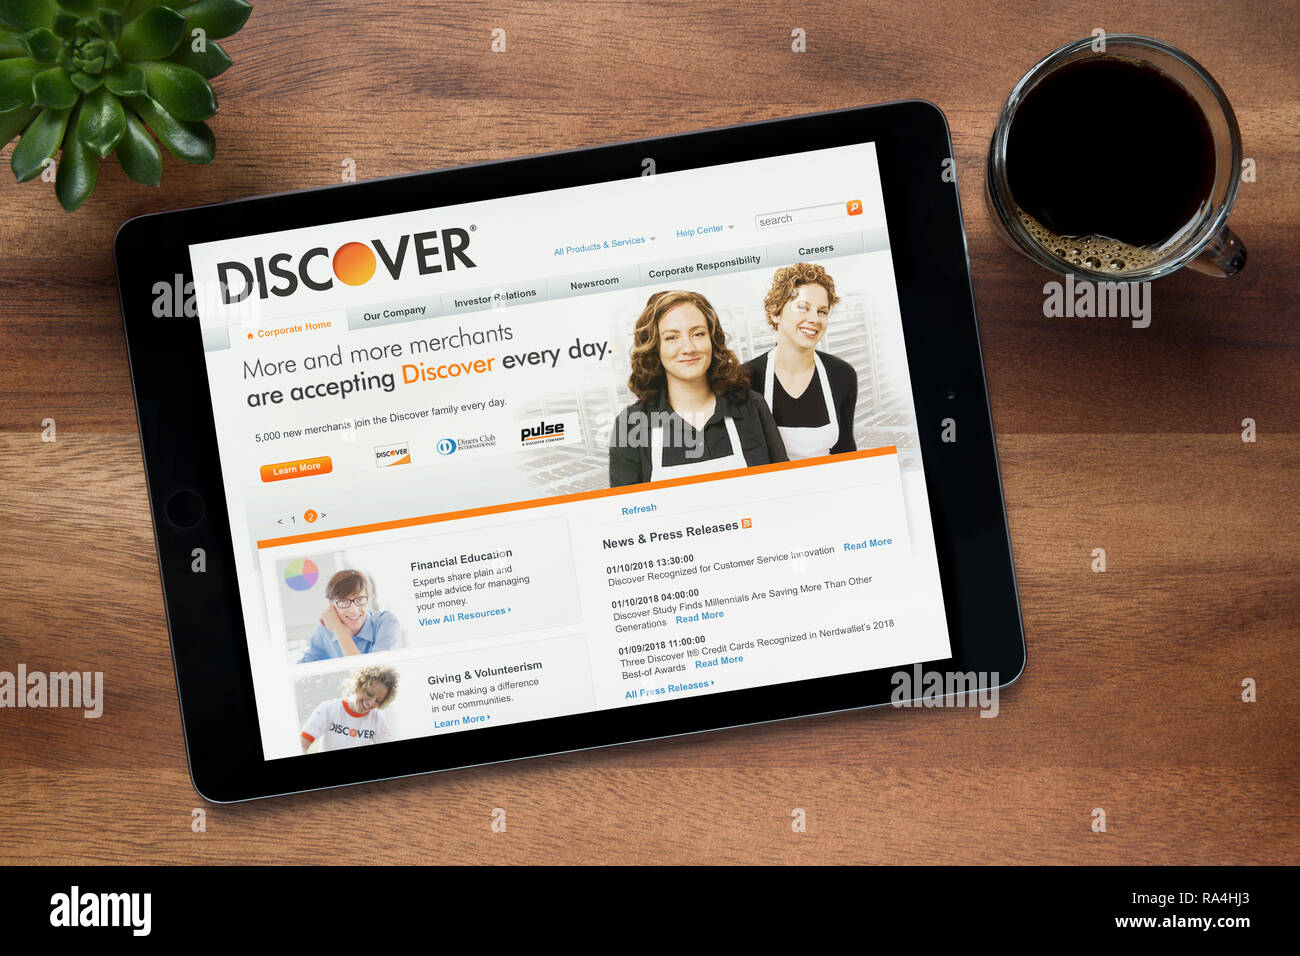 Le site internet de Discover.com est vu sur un iPad tablet, sur une table en bois avec une machine à expresso et d'une plante (usage éditorial uniquement). Banque D'Images